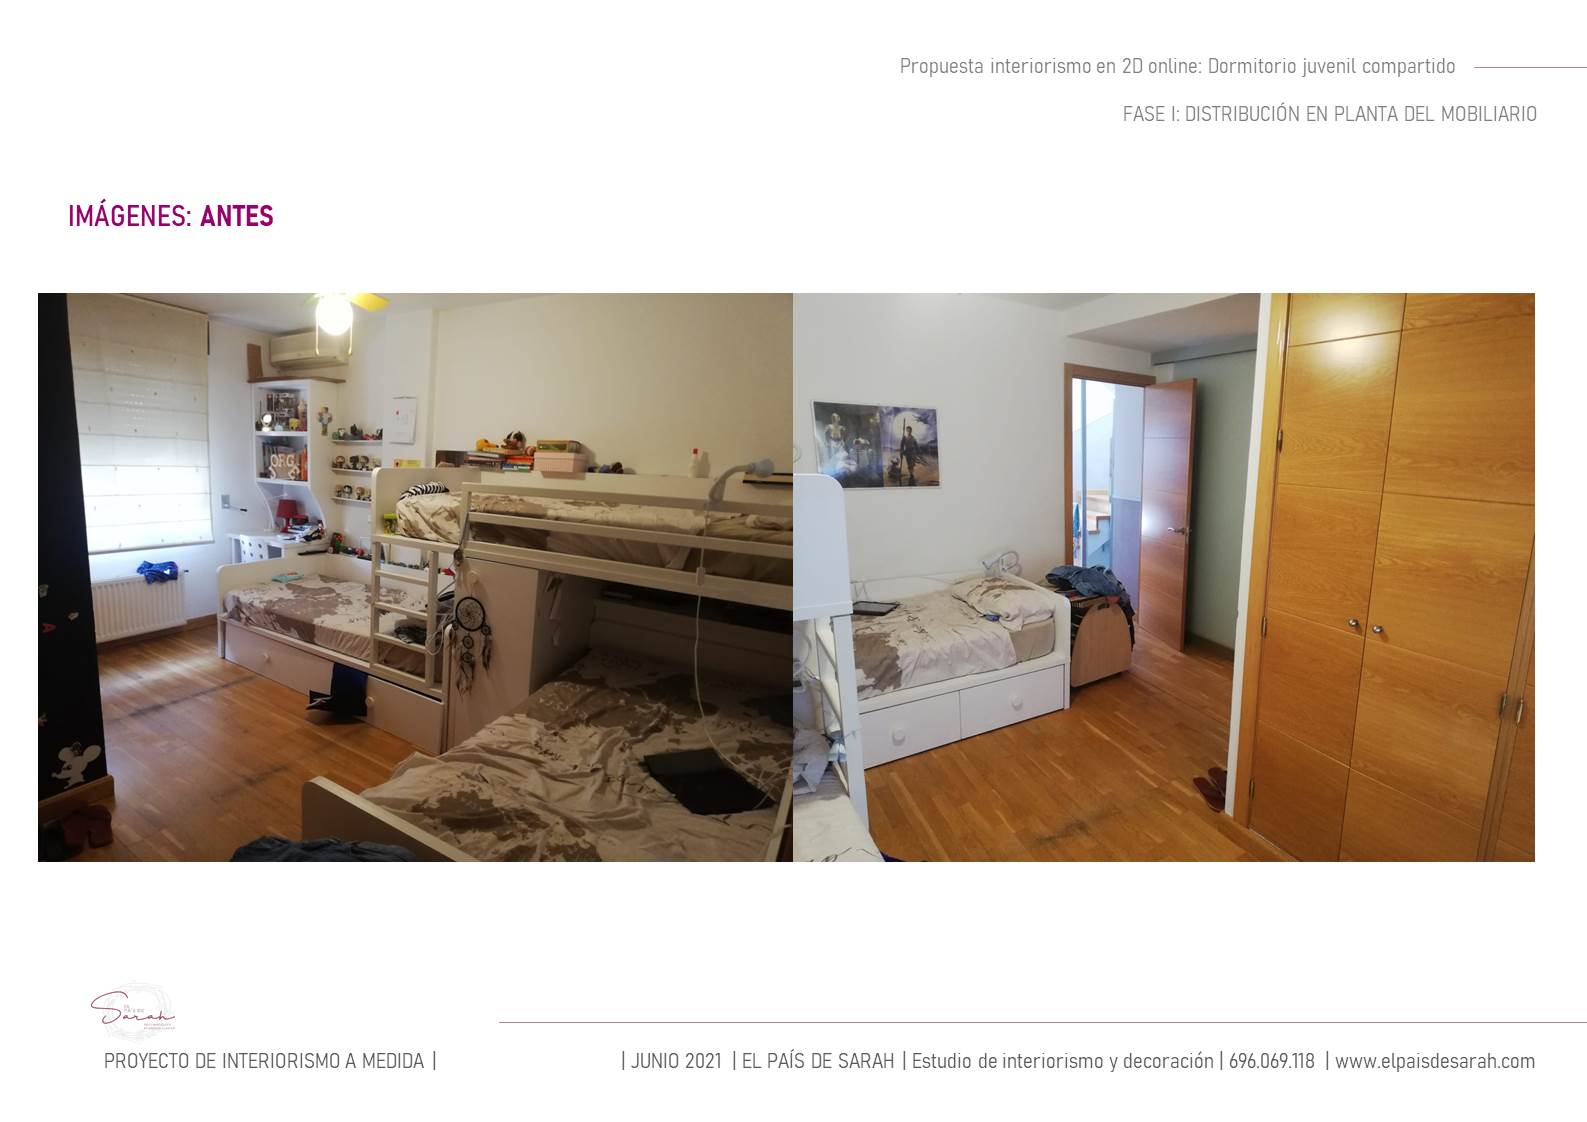 pre-proyecto_diseño_dormitorio_juvenil_compartido_interiorsmo_decoración_interiores-02